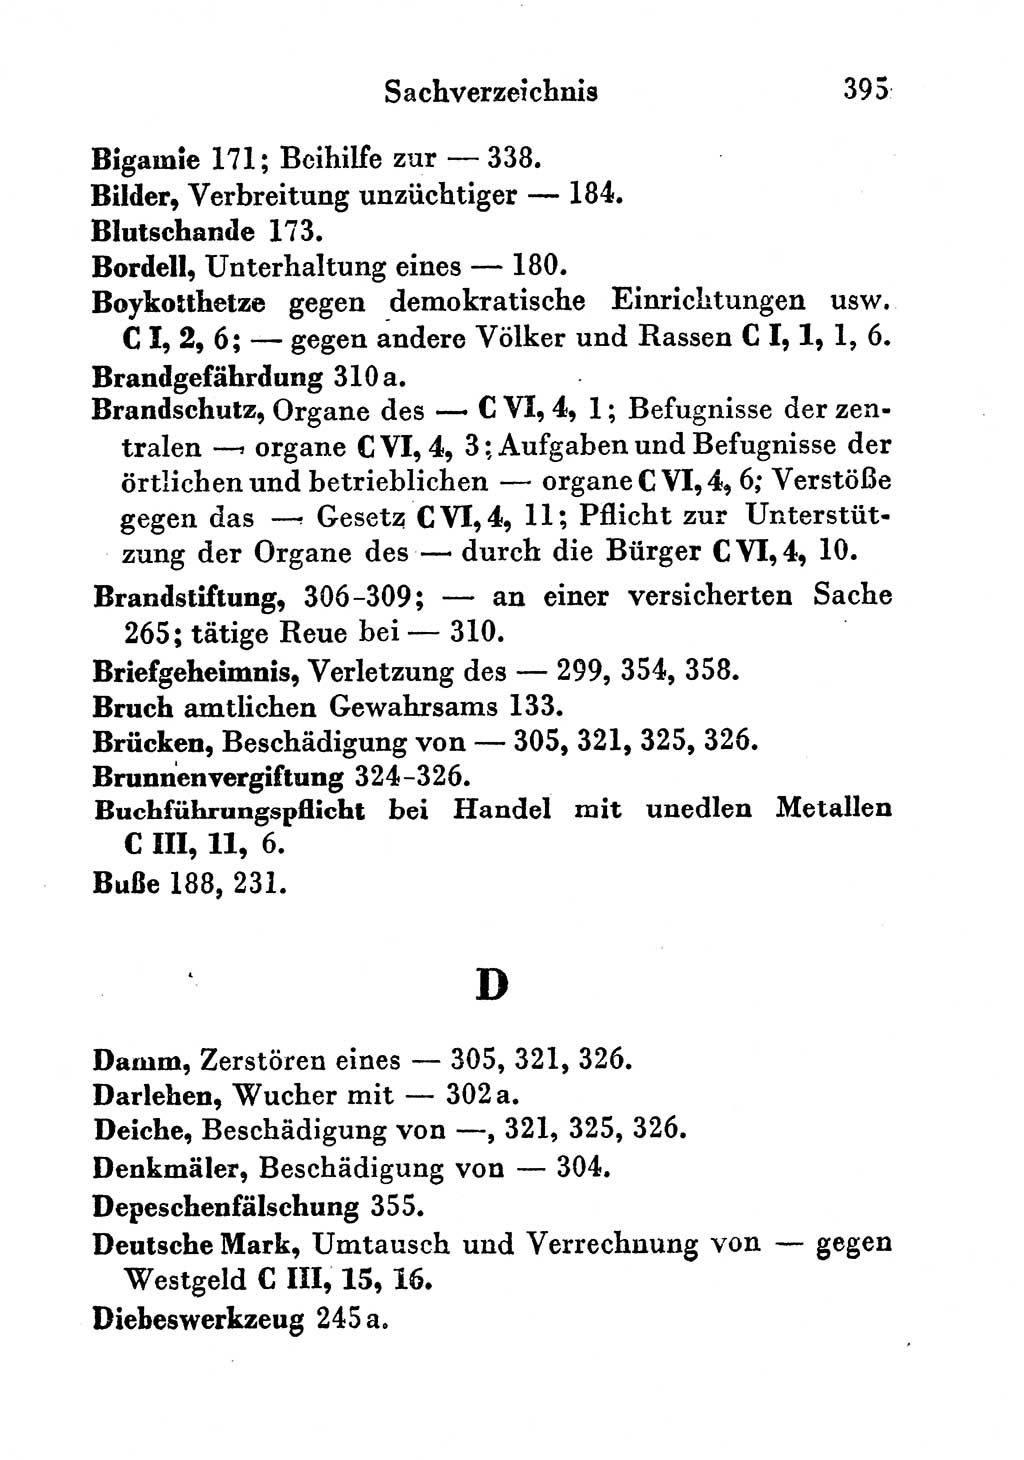 Strafgesetzbuch (StGB) und andere Strafgesetze [Deutsche Demokratische Republik (DDR)] 1956, Seite 395 (StGB Strafges. DDR 1956, S. 395)